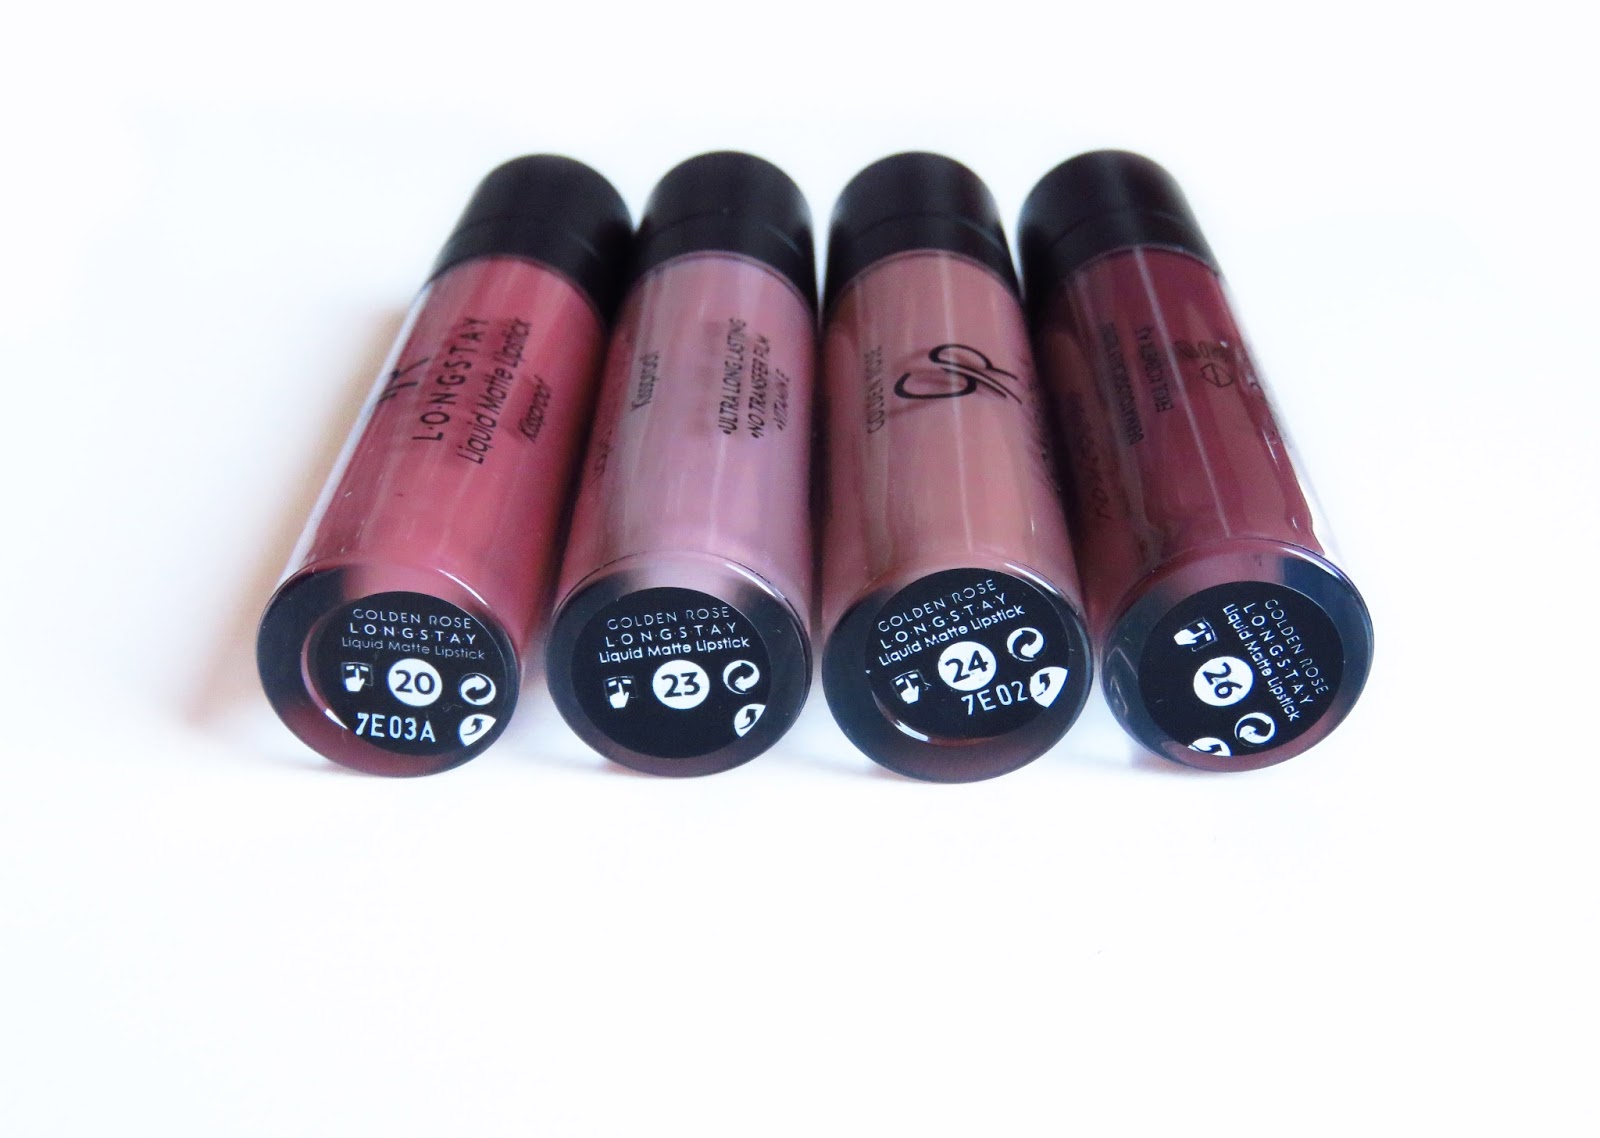 Kickstarter New Shades Golden Rose Longstay Liquid Lipsticks In 23 24 26